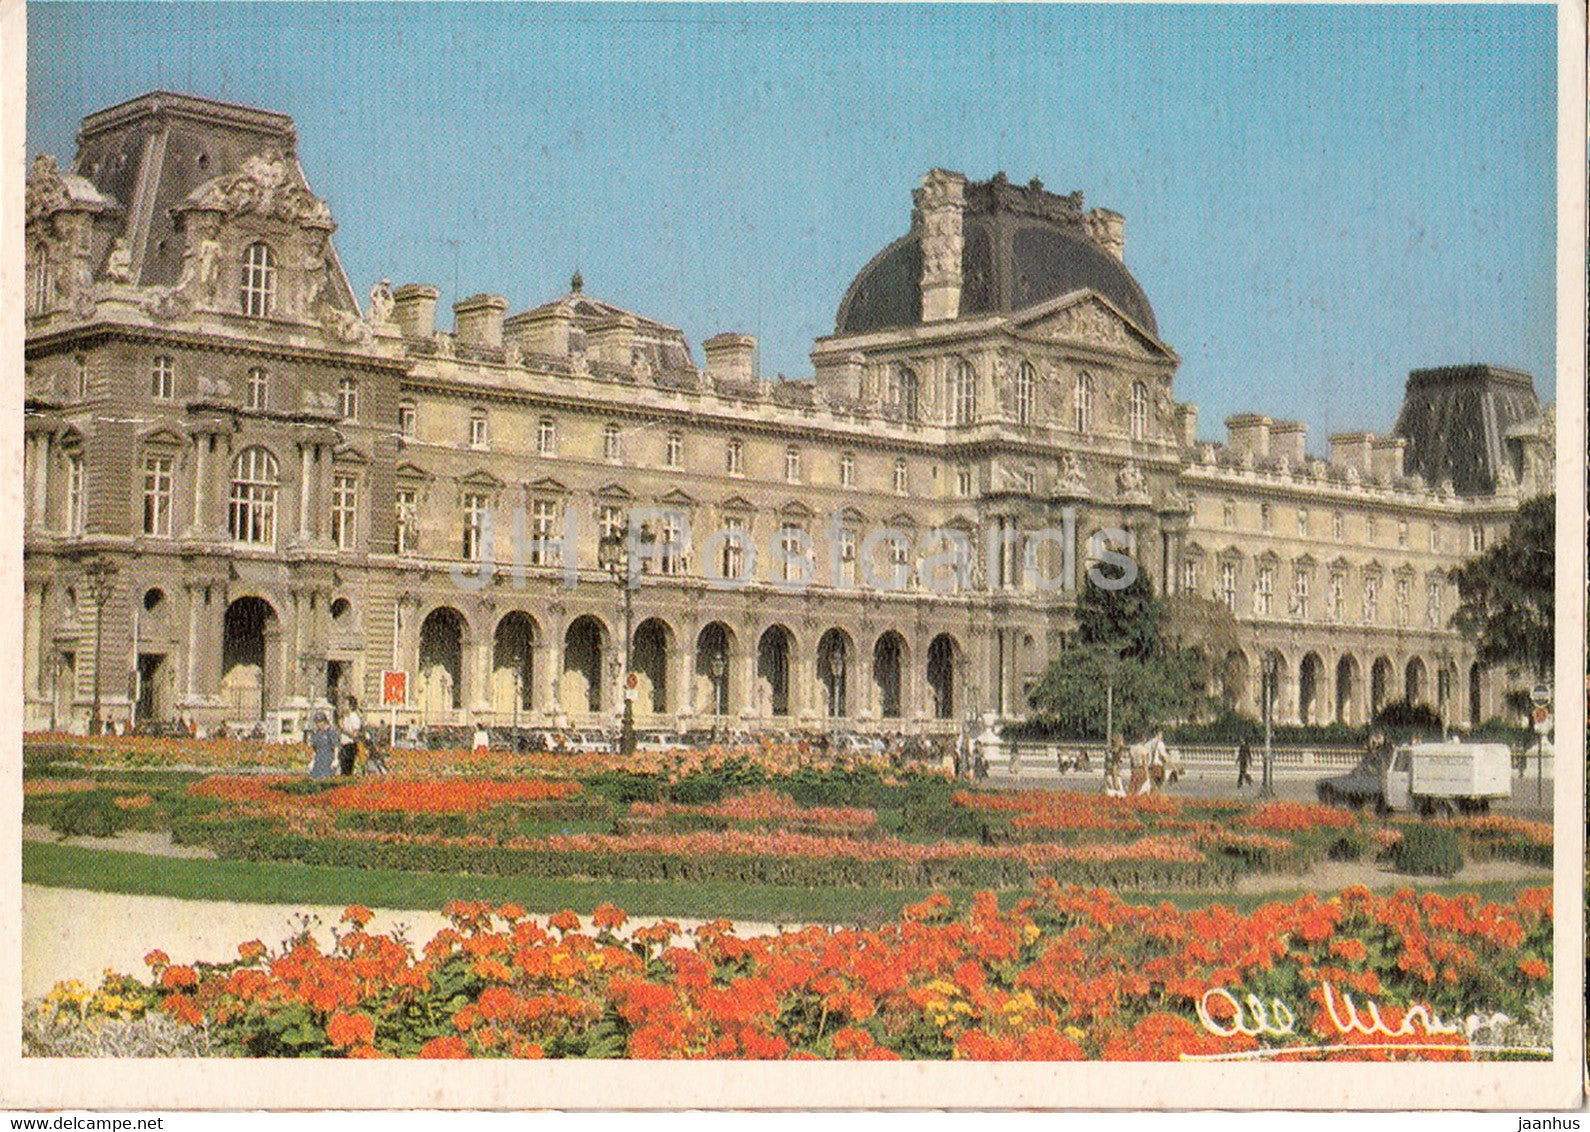 Paris - Les Parterres fleuris du square du Carrousel - Louvre - 1987 - France - used - JH Postcards